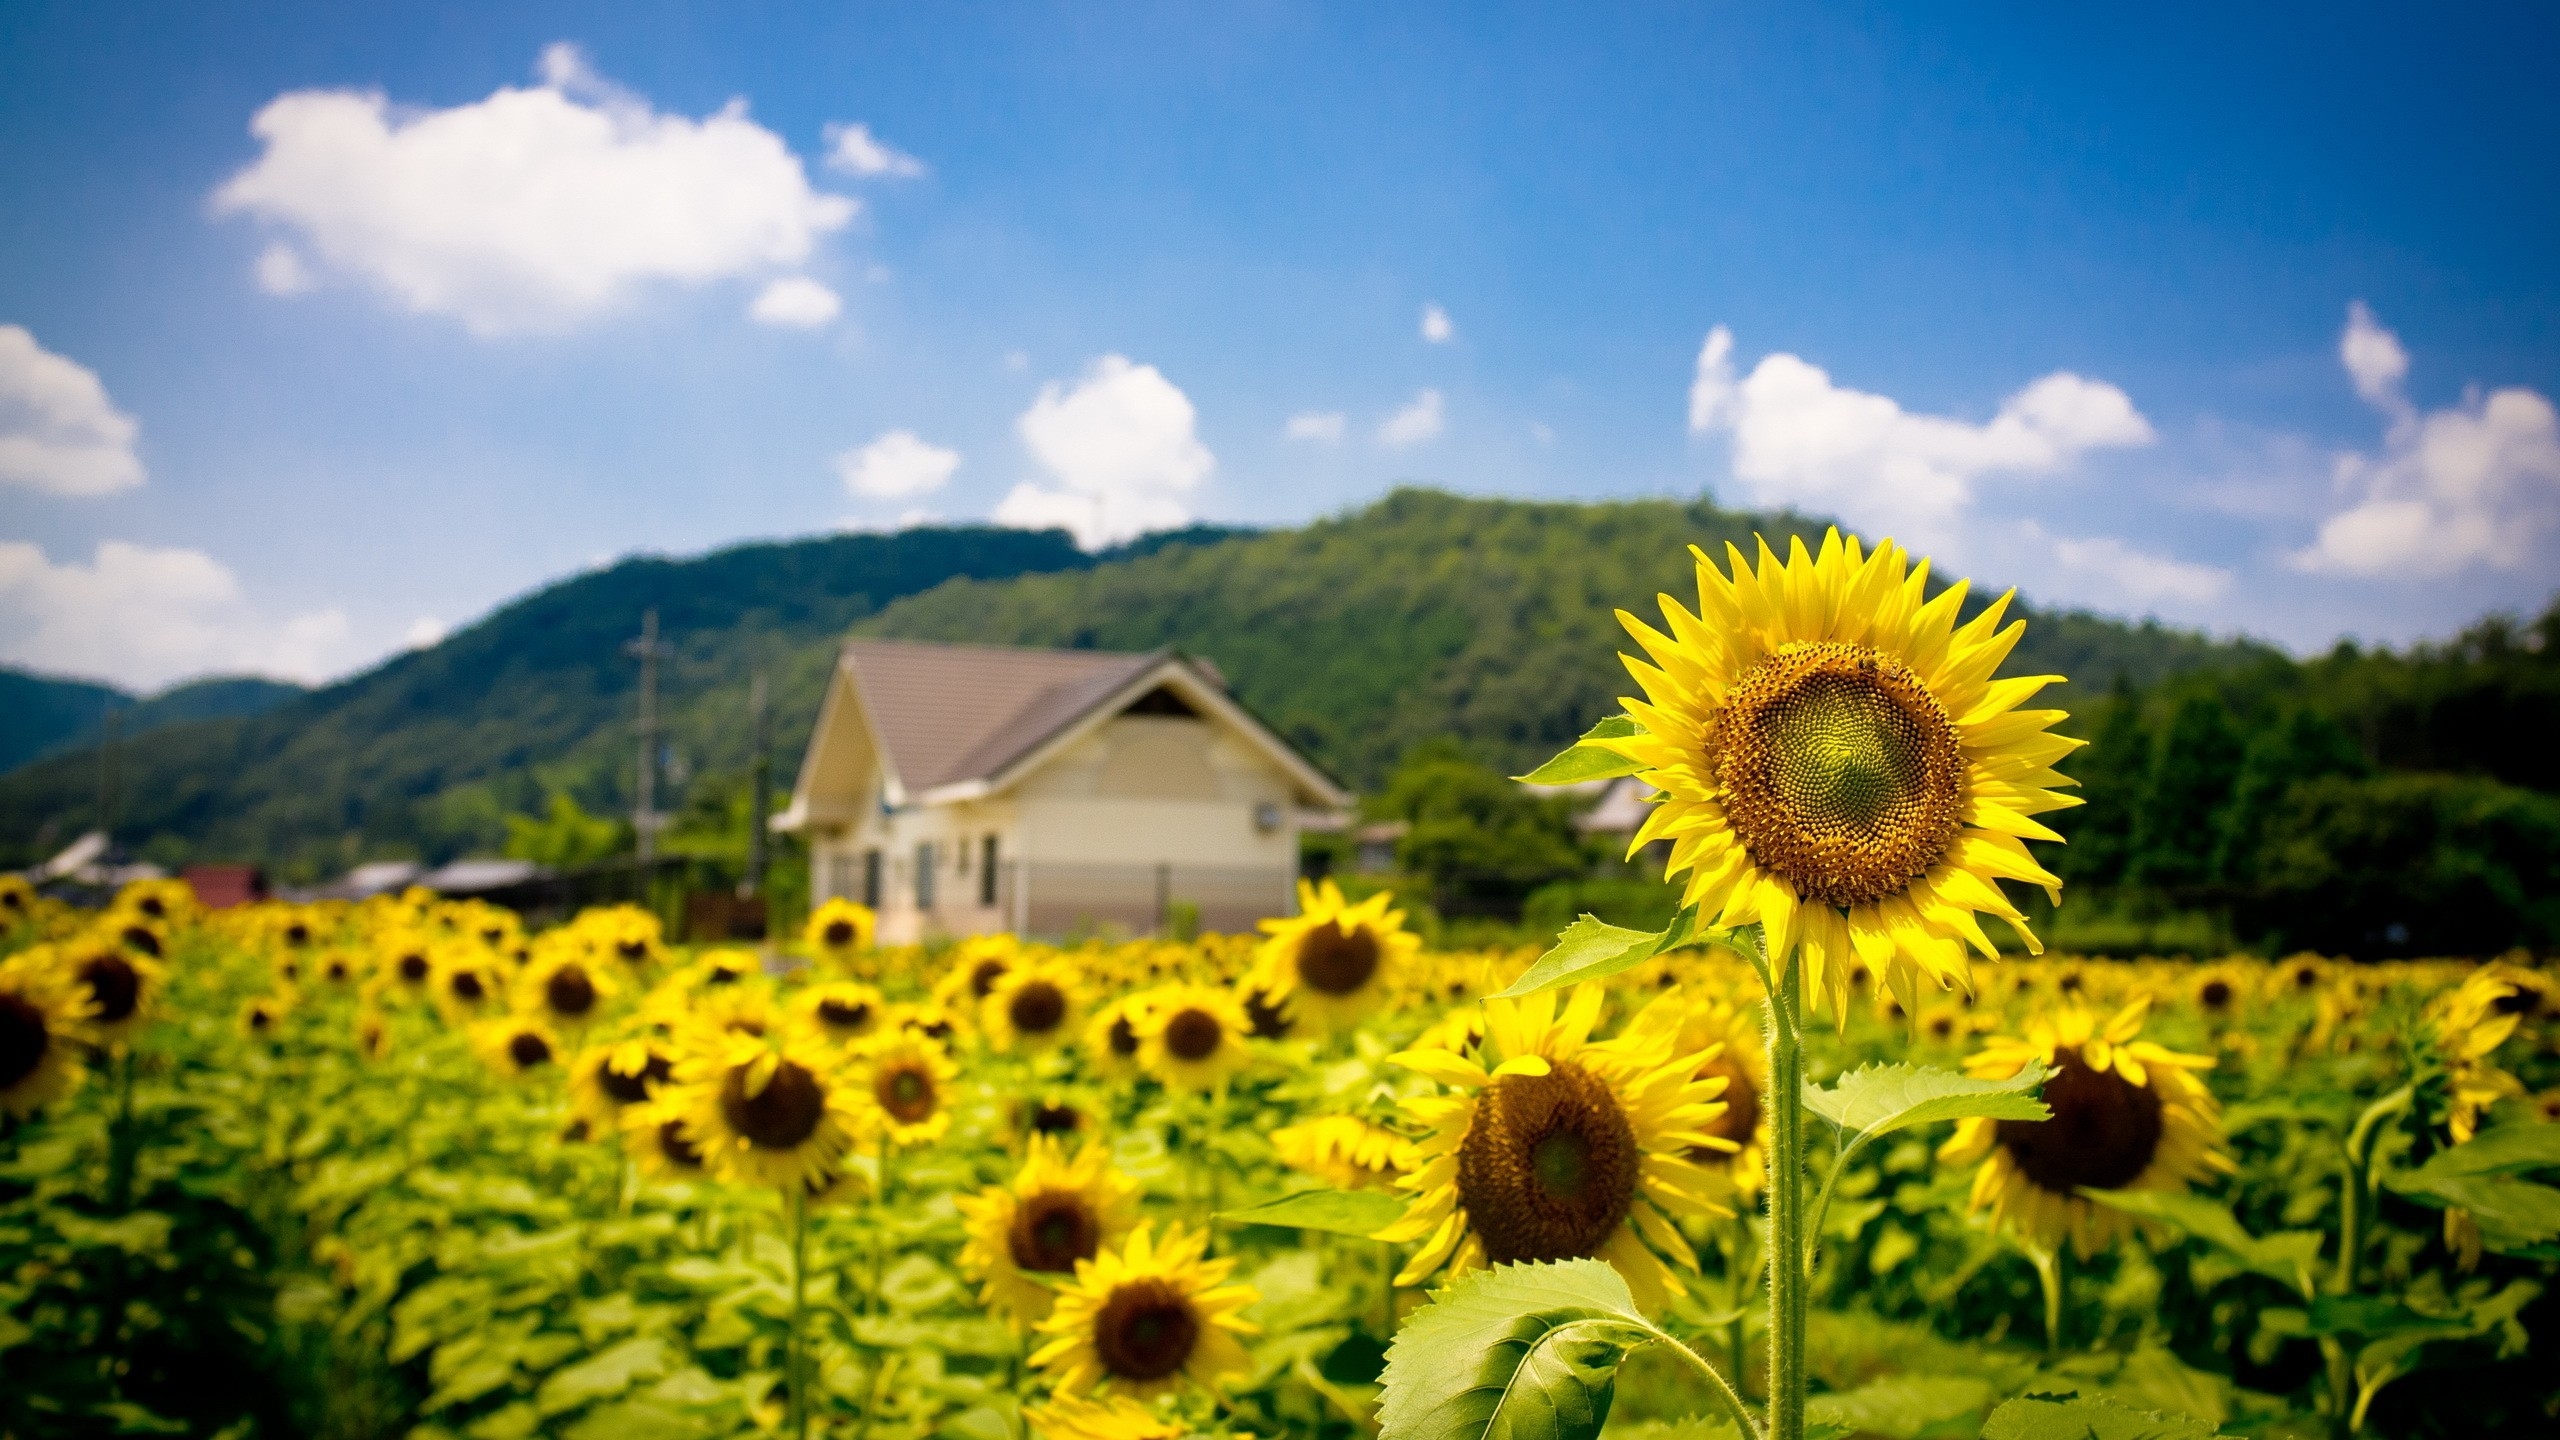 Sunflower Land for 2560x1440 HDTV resolution